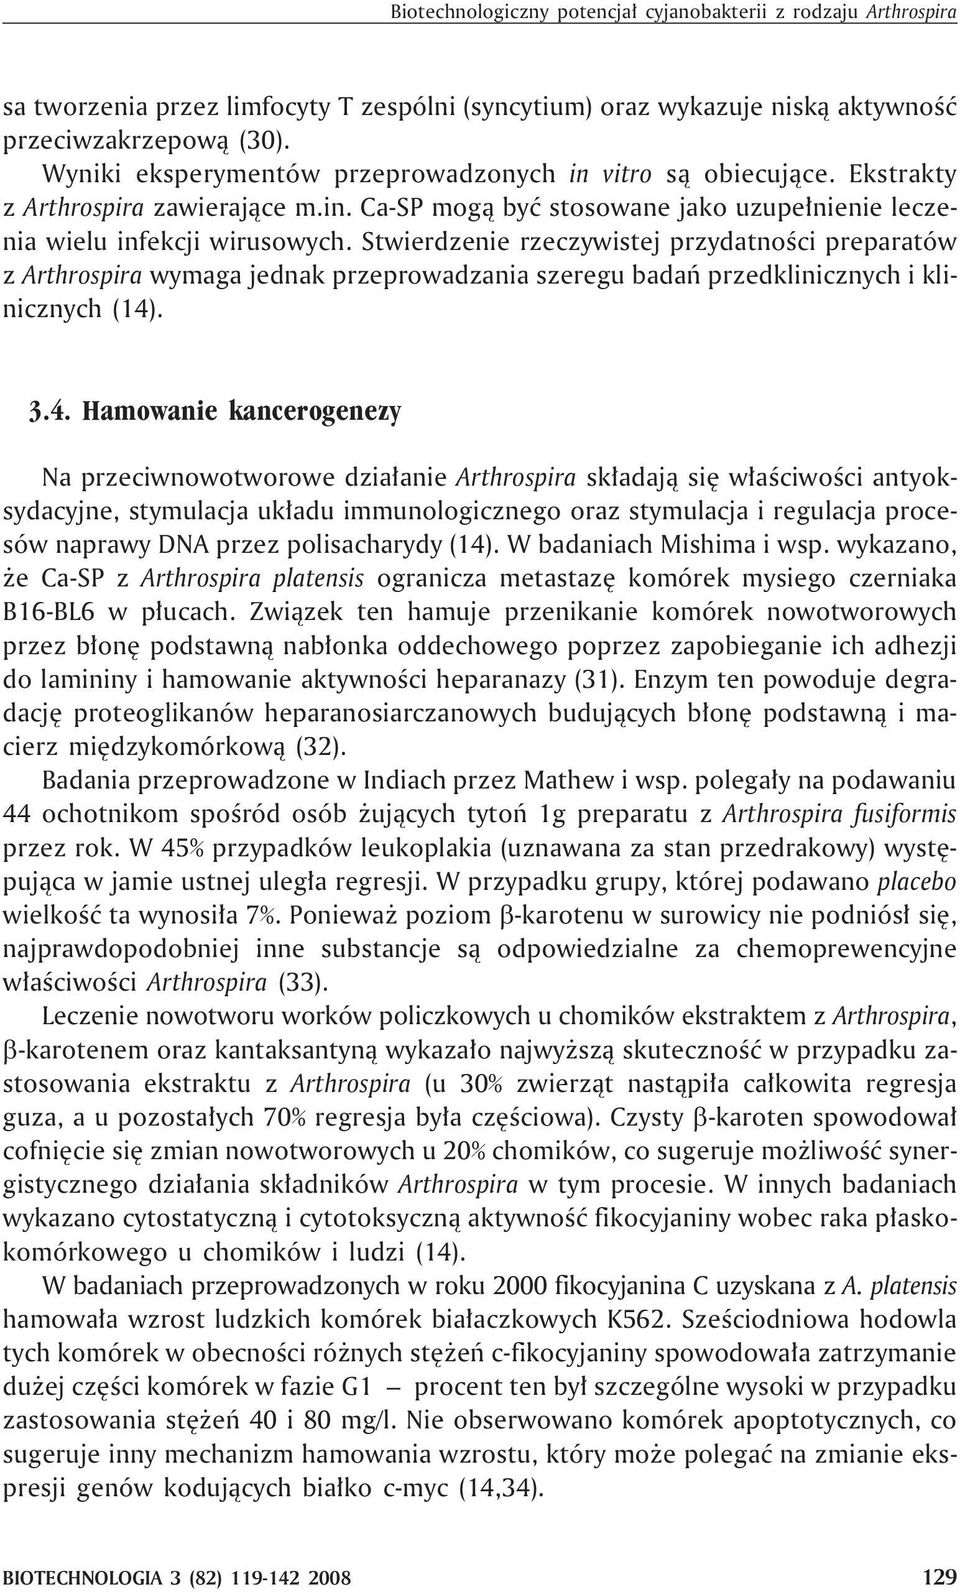 Stwierdzenie rzeczywistej przydatnoœci preparatów z Arthrospira wymaga jednak przeprowadzania szeregu badañ przedklinicznych i klinicznych (14)